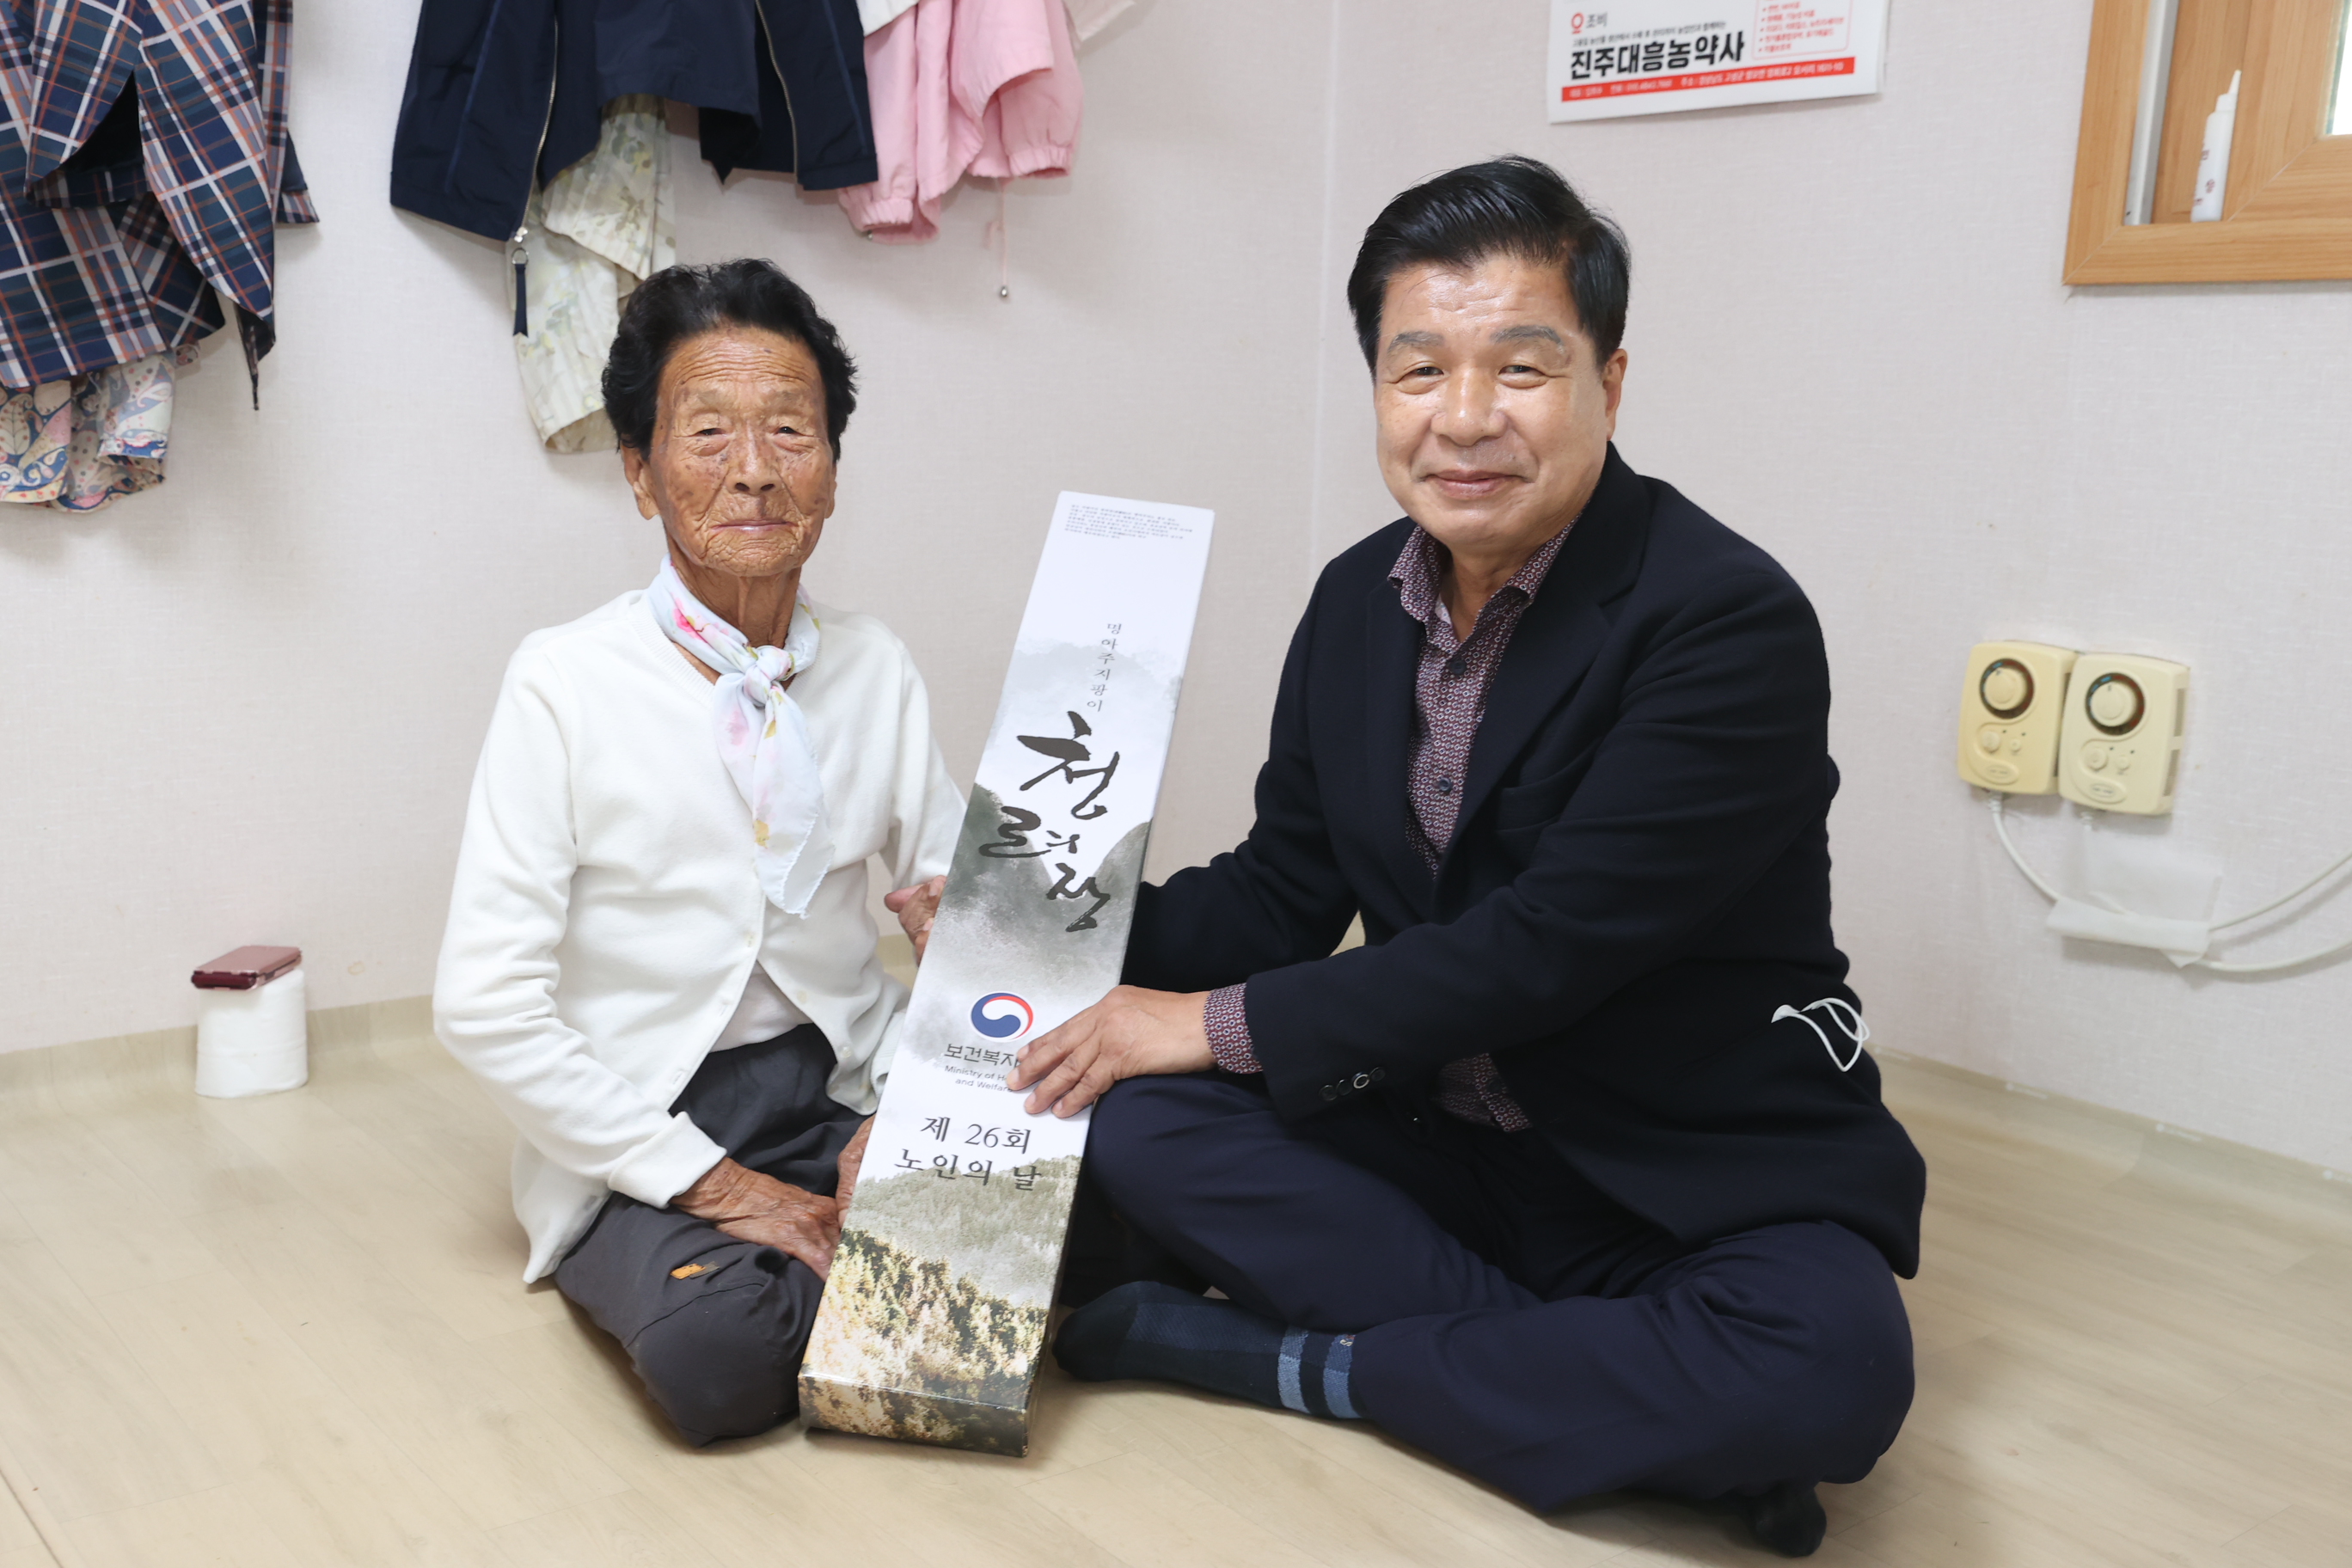 10월13일 노인의 날 기념 장수지팡이(청려장) 증정 관련자료